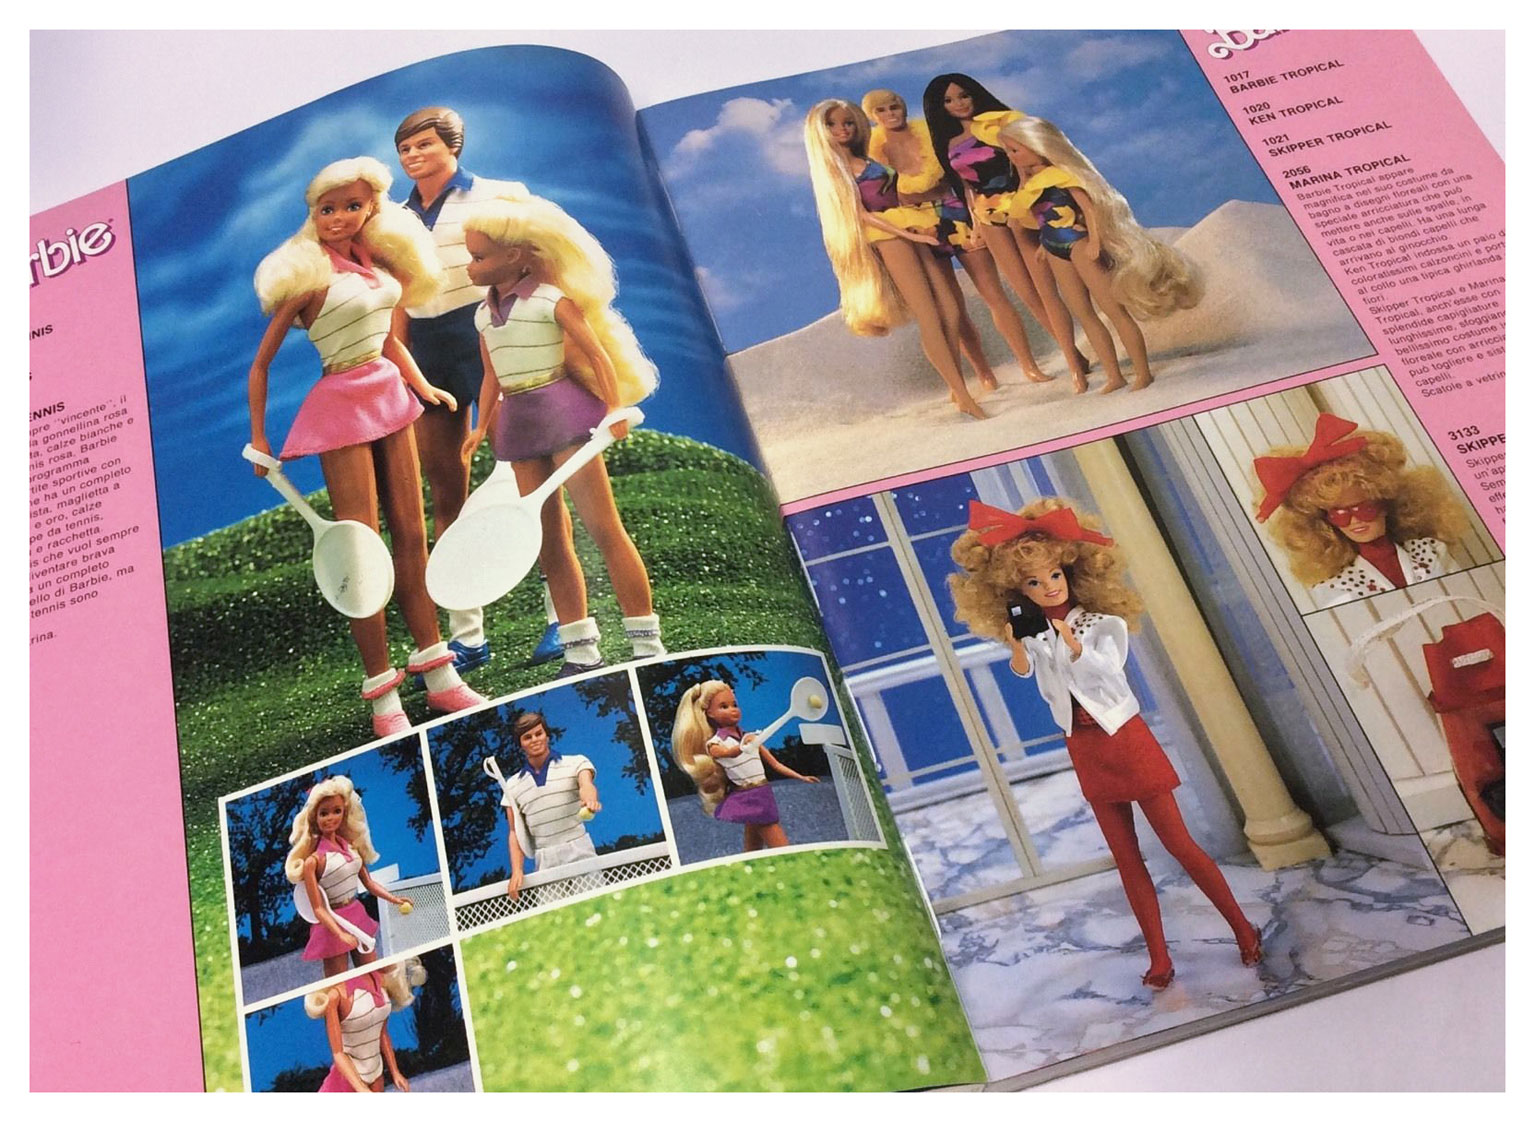 From 1987 Italian Mattel Toys catalogue